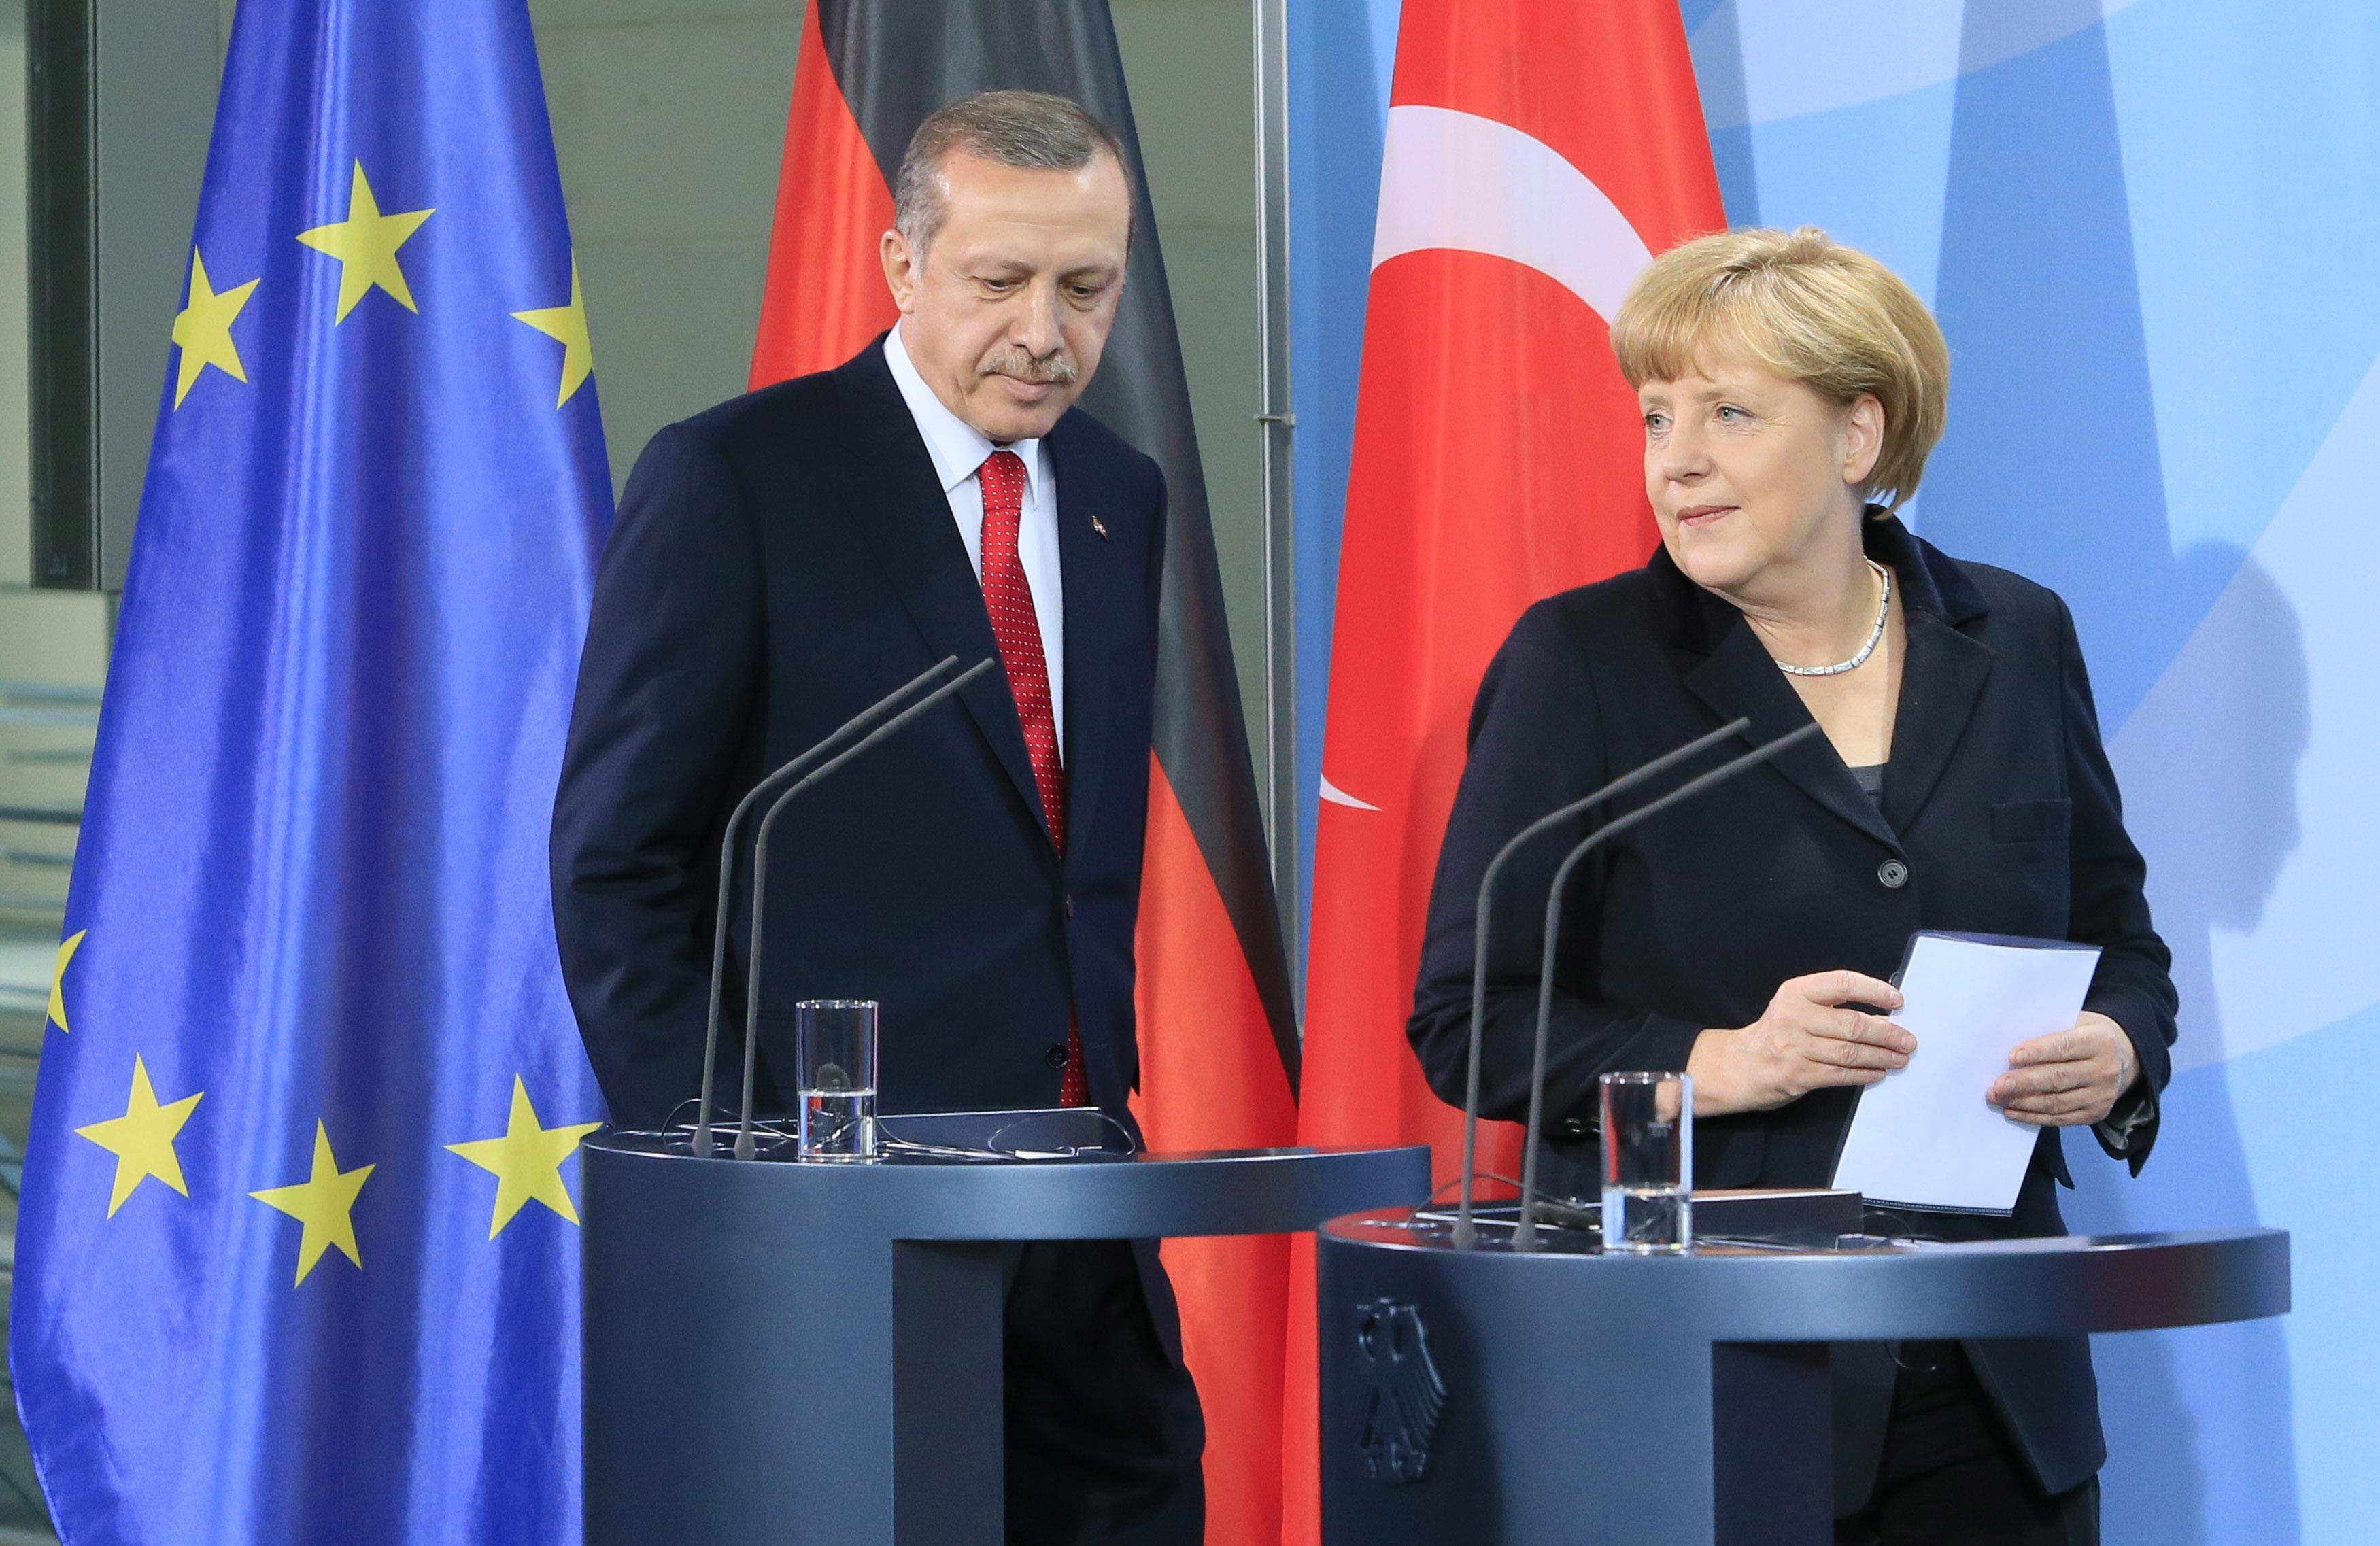 Ερντογάν: Λάθος η ένταξη της Κύπρου στην ΕΕ, μου το είπε και η Μέρκελ